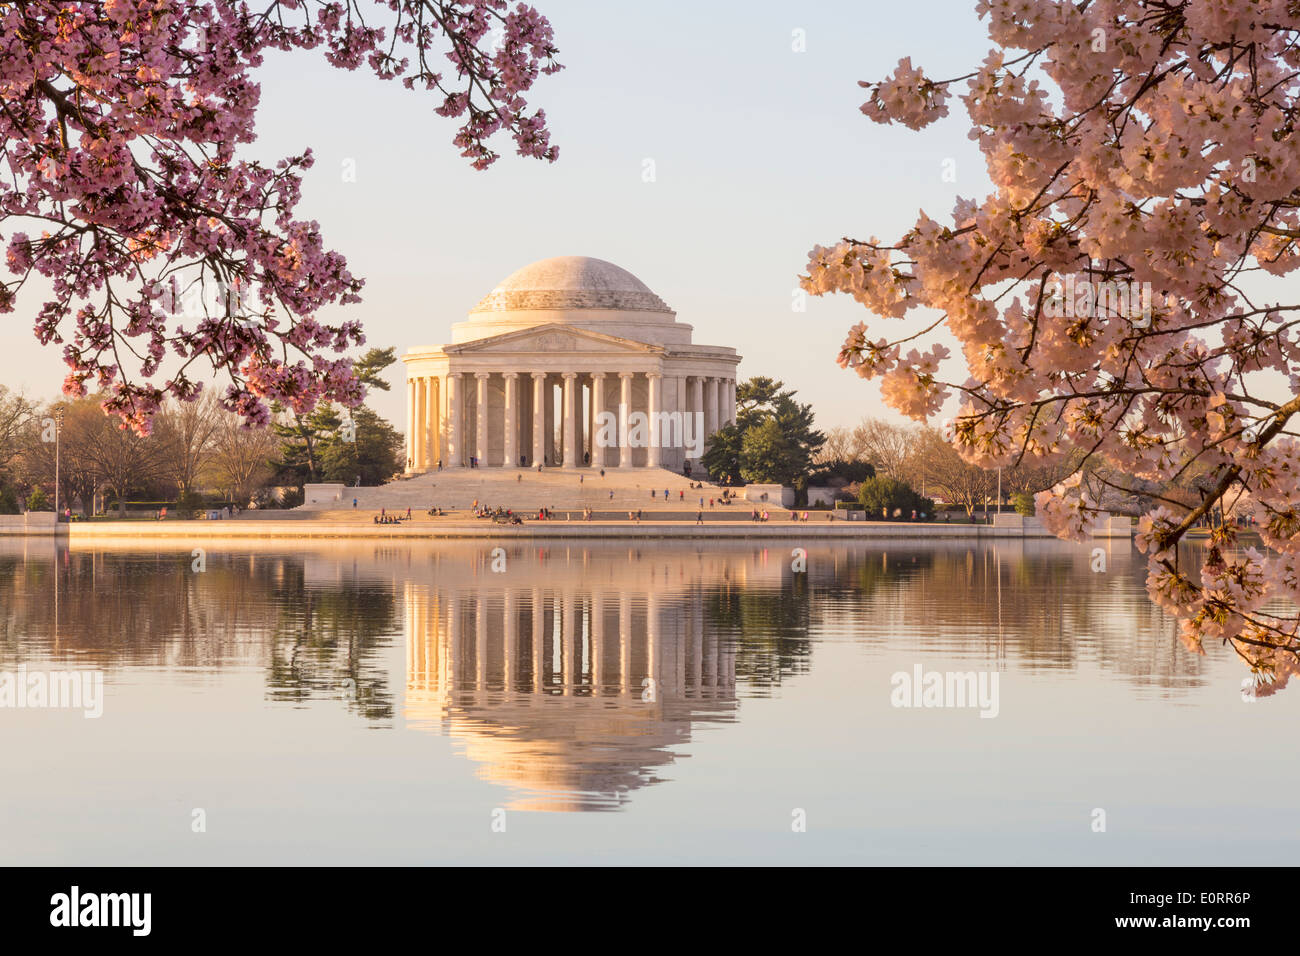 Washington DC - Jefferson Memorial, Washington DC e Tidal Basin, , STATI UNITI D'AMERICA - di rosa fiori di ciliegio, la mattina presto in primavera Foto Stock